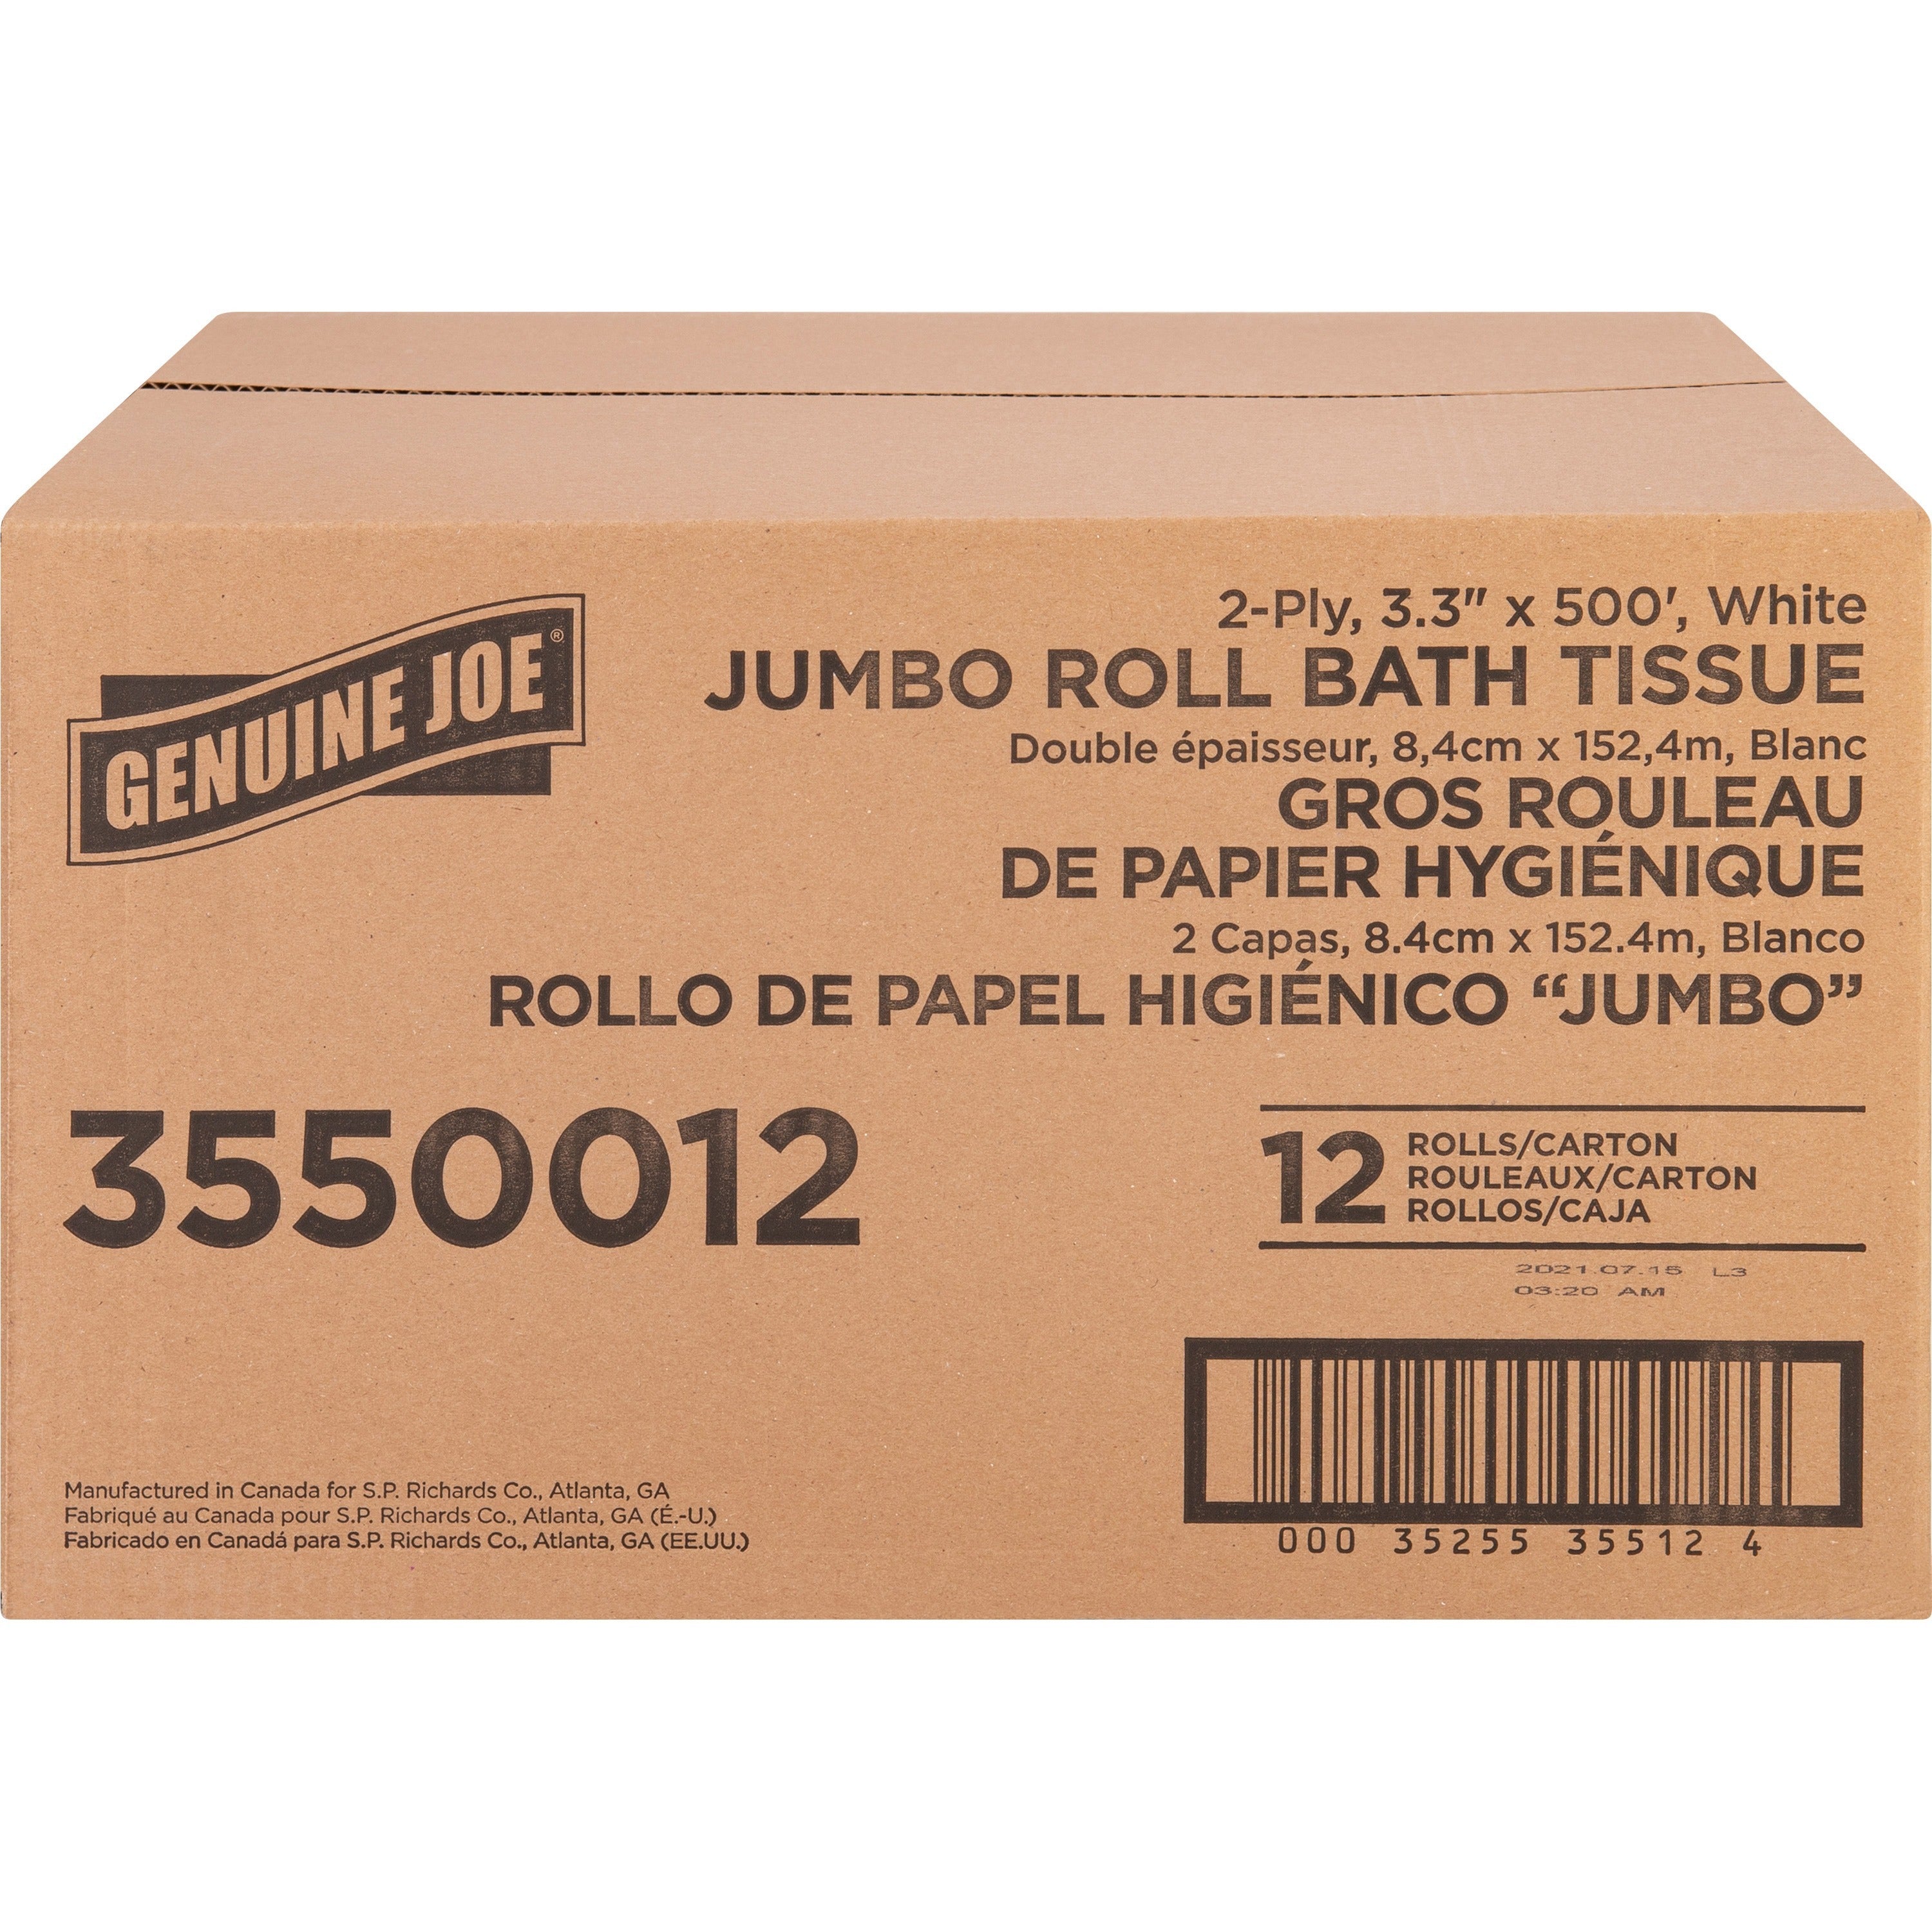 genuine-joe-jumbo-jr-dispenser-bath-tissue-roll-2-ply-330-x-500-ft-888-roll-diameter-white-fiber-sewer-safe-septic-safe-for-bathroom-12-carton_gjo3550012 - 2